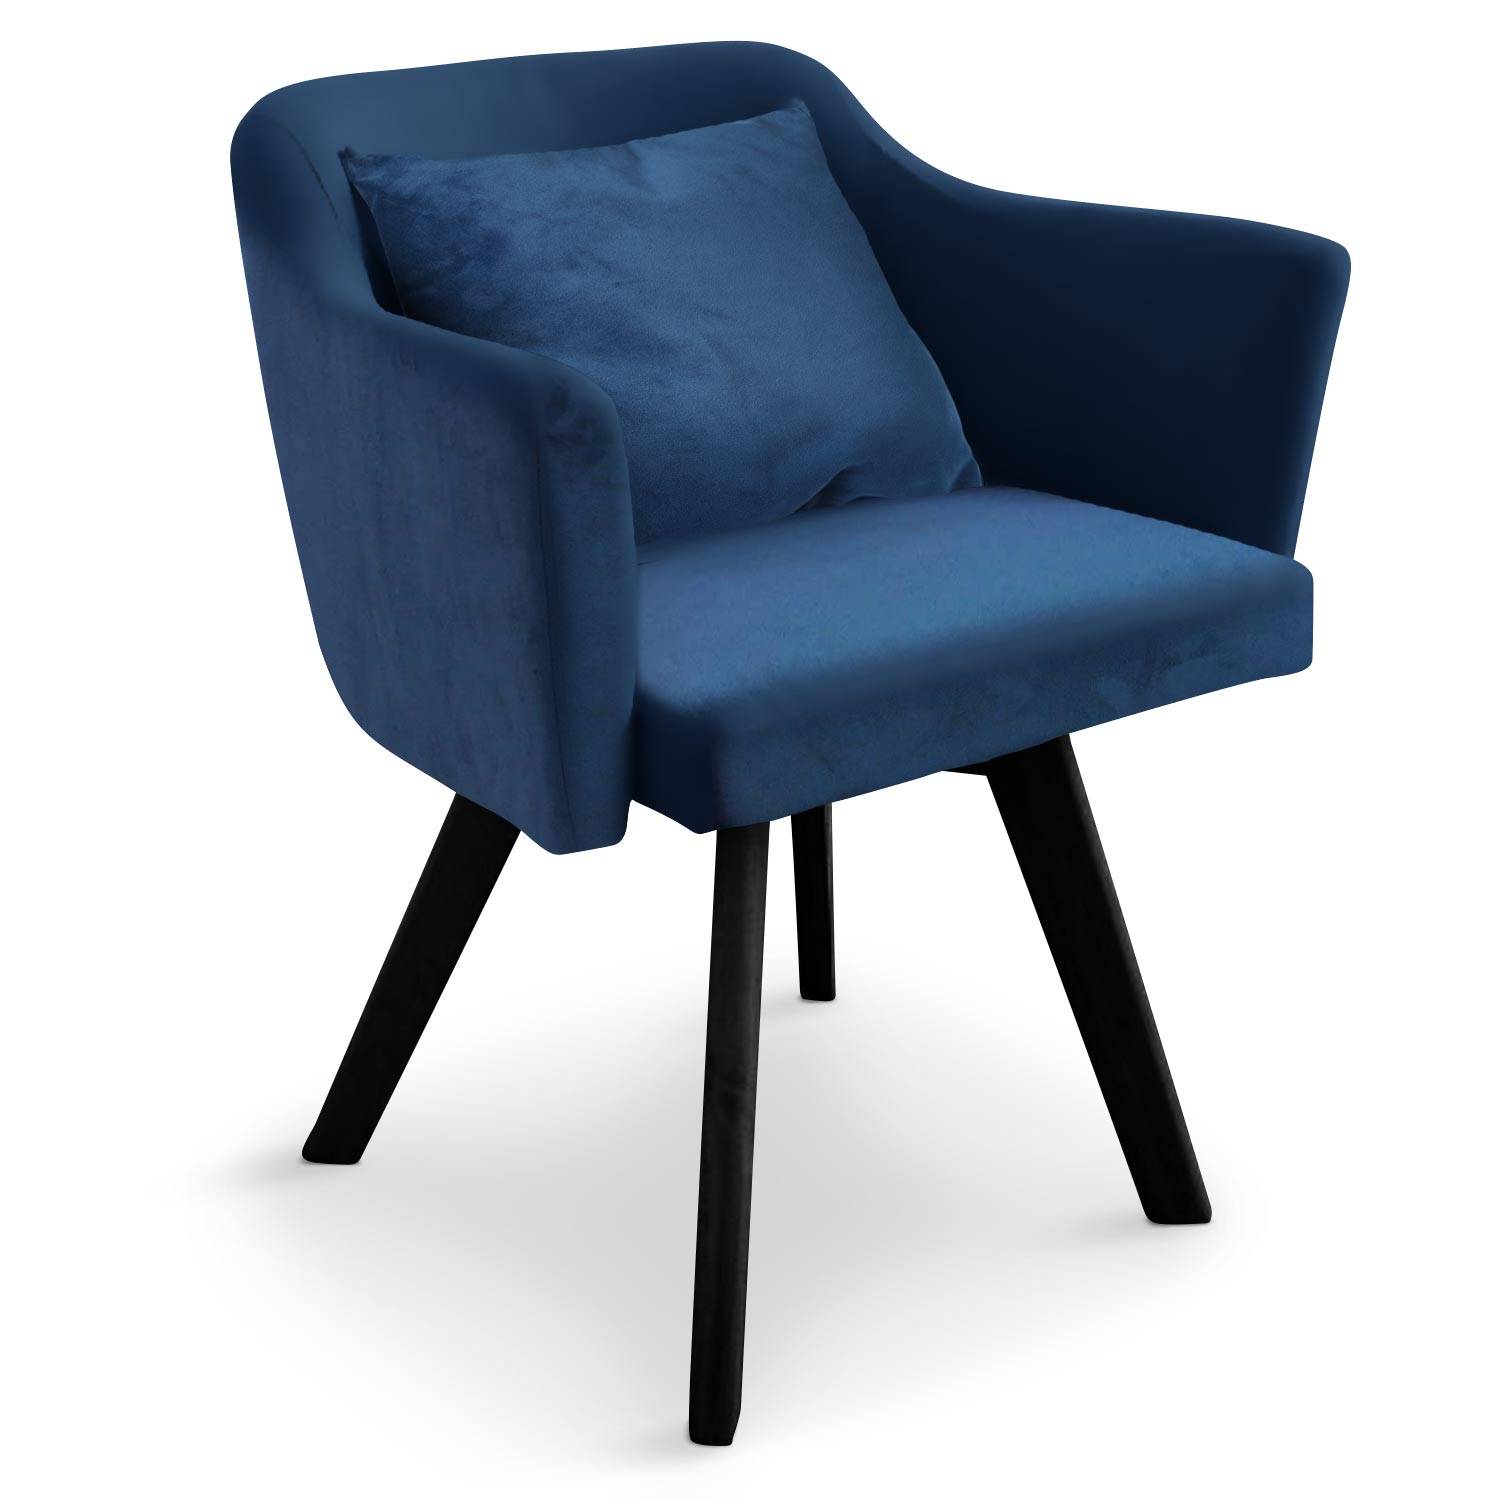 Met name mate bijgeloof Scandinavische stoel / fauteuil Dantes blauw fluweel